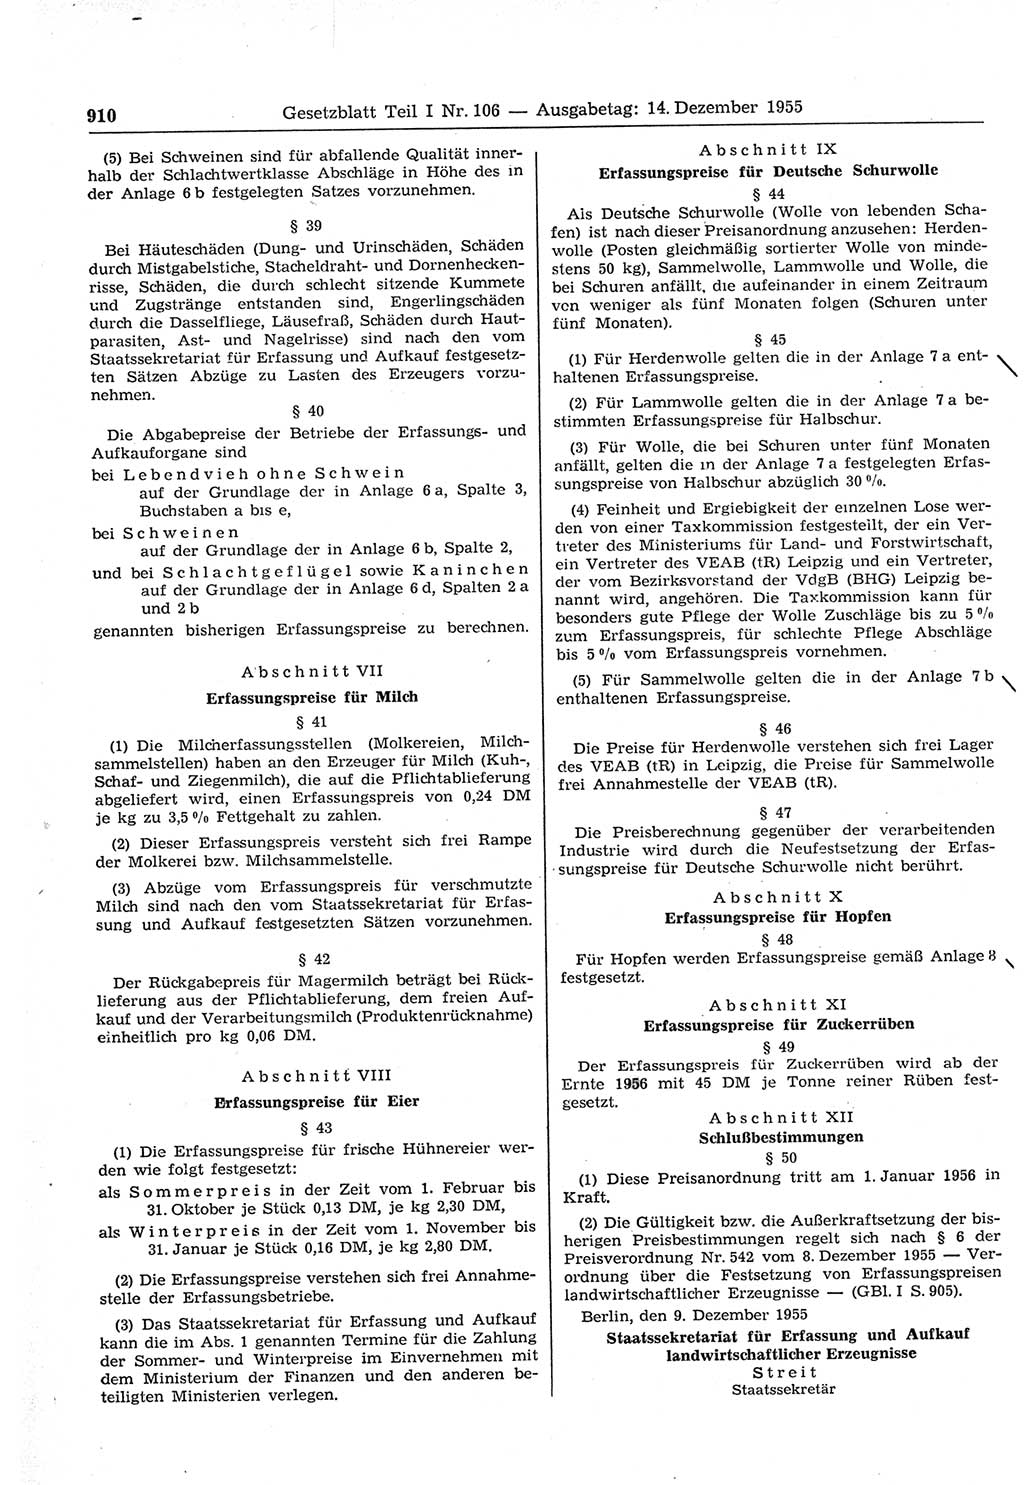 Gesetzblatt (GBl.) der Deutschen Demokratischen Republik (DDR) Teil Ⅰ 1955, Seite 910 (GBl. DDR Ⅰ 1955, S. 910)